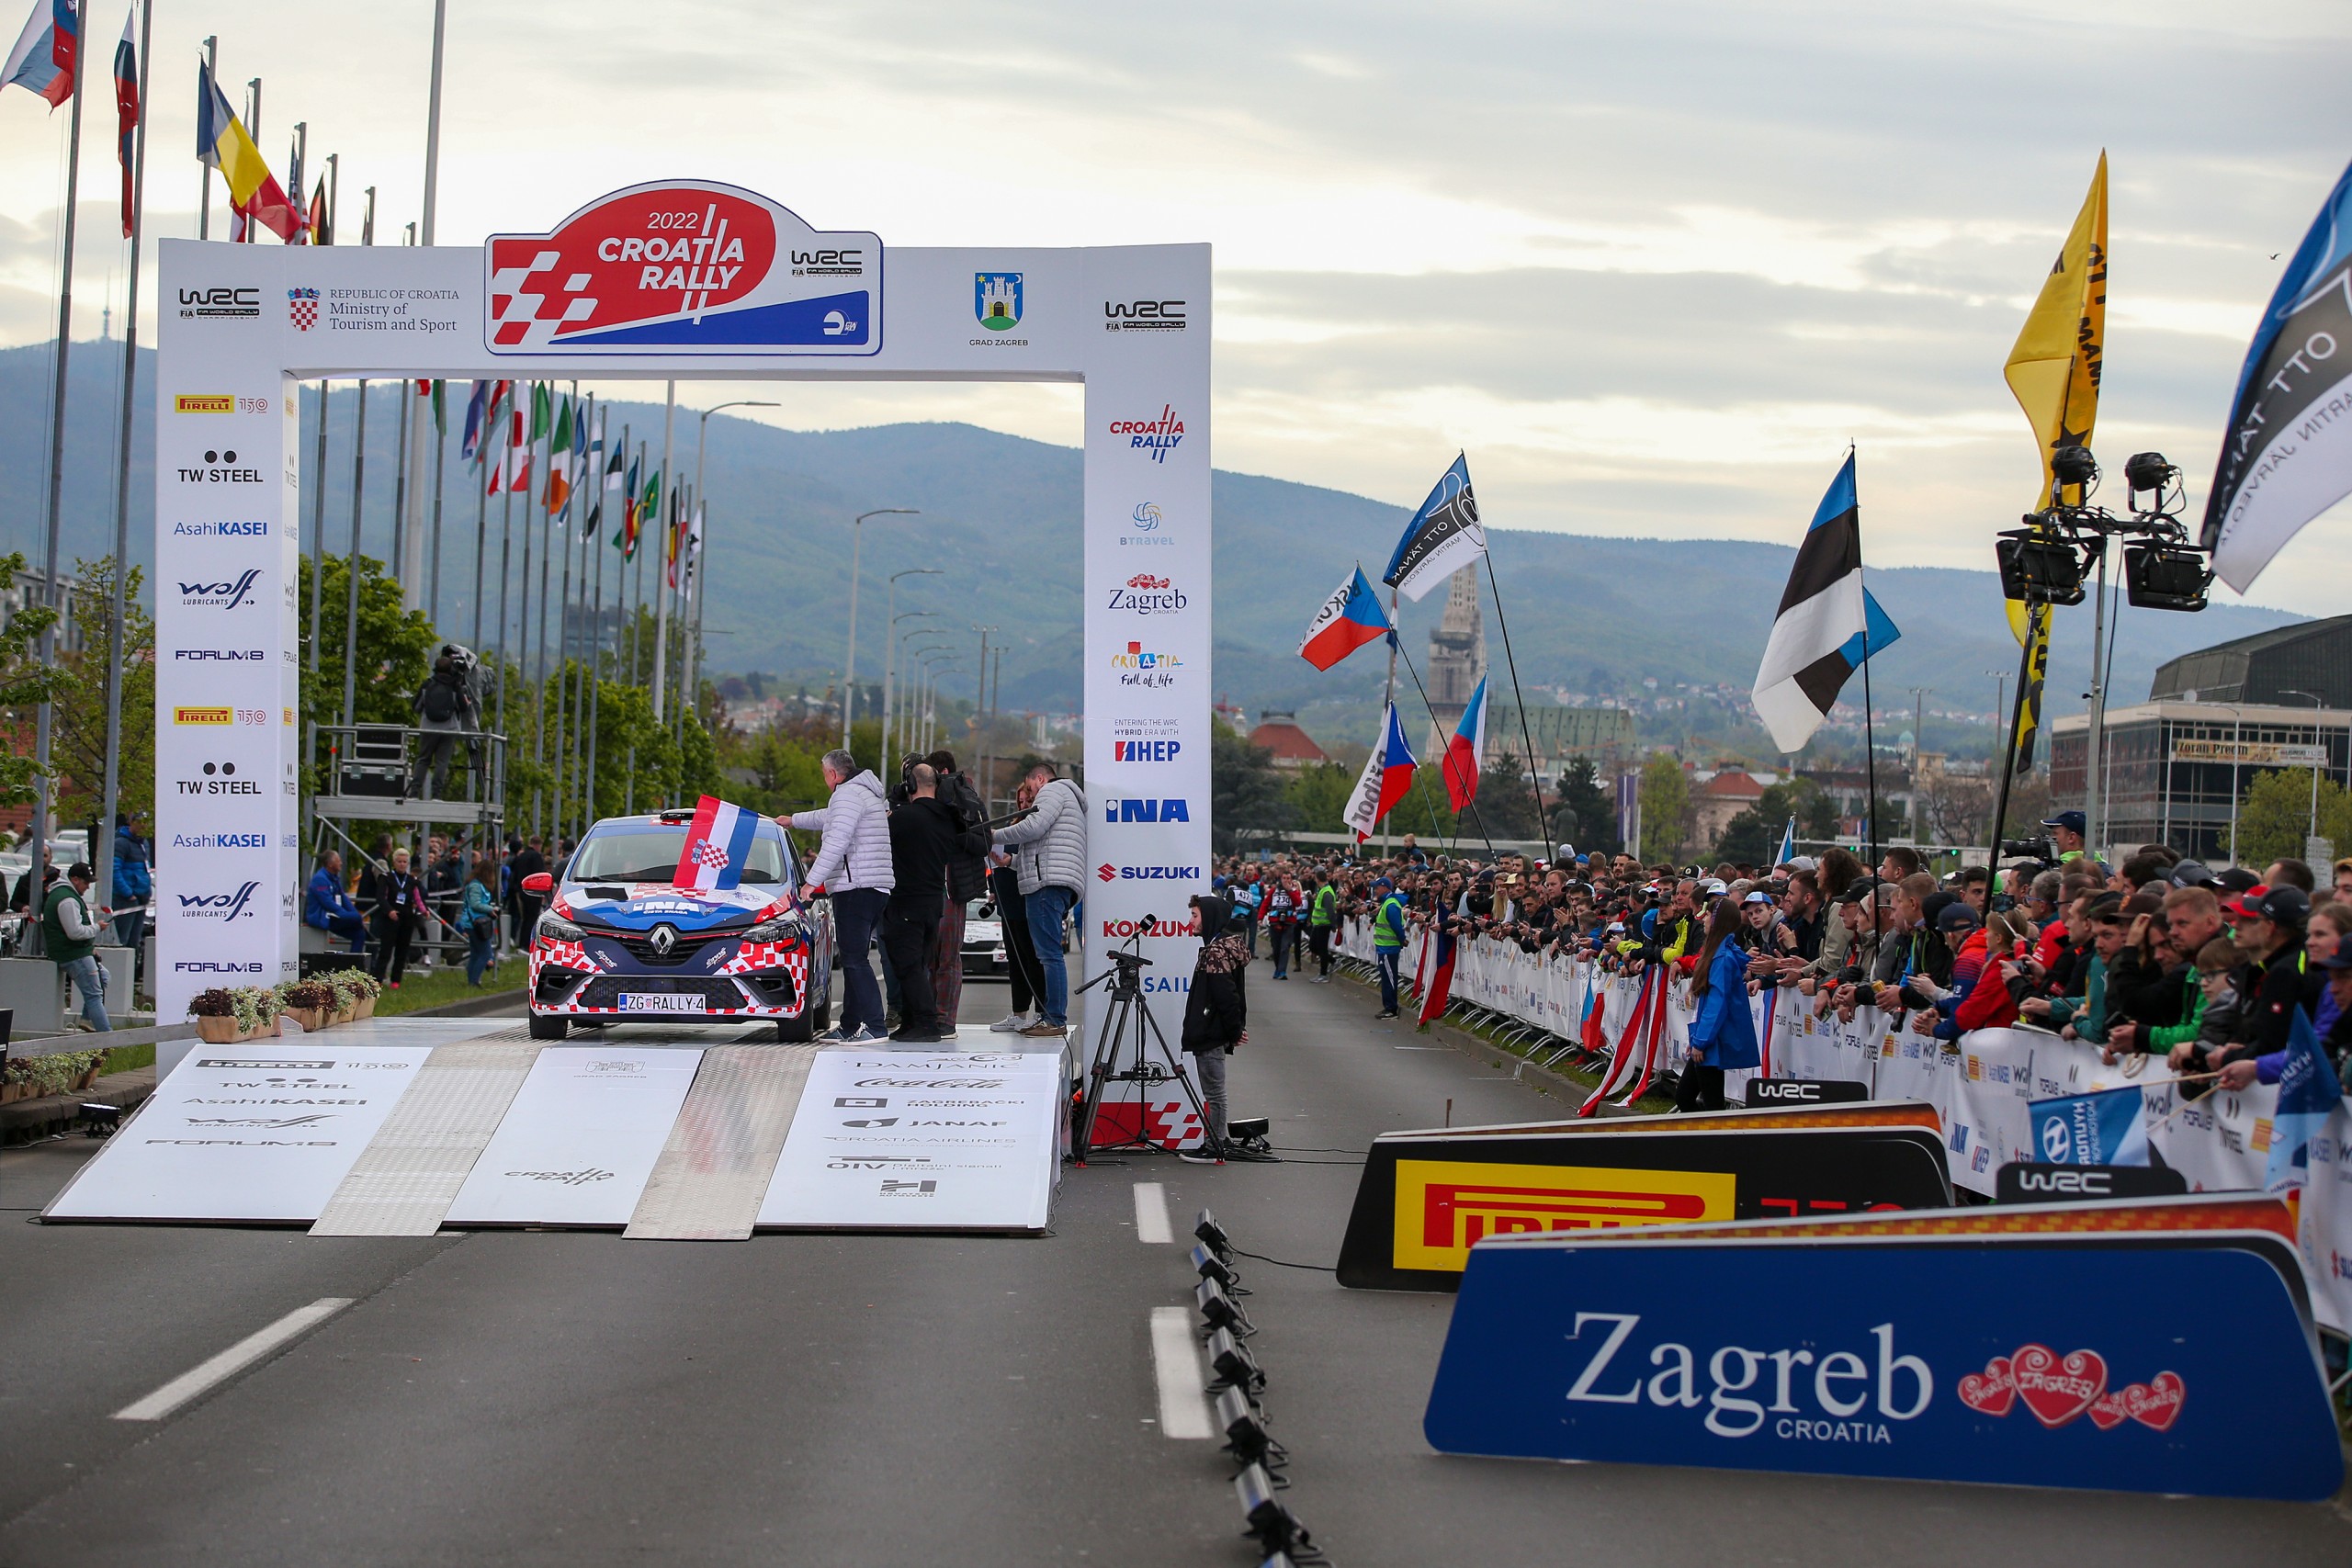 21.04.2022., Zagreb - Ceremonijalni start WRC Croatia Rally u ulici Hrvatske bratske zajednice. Photo: Matija Habljak/PIXSELL